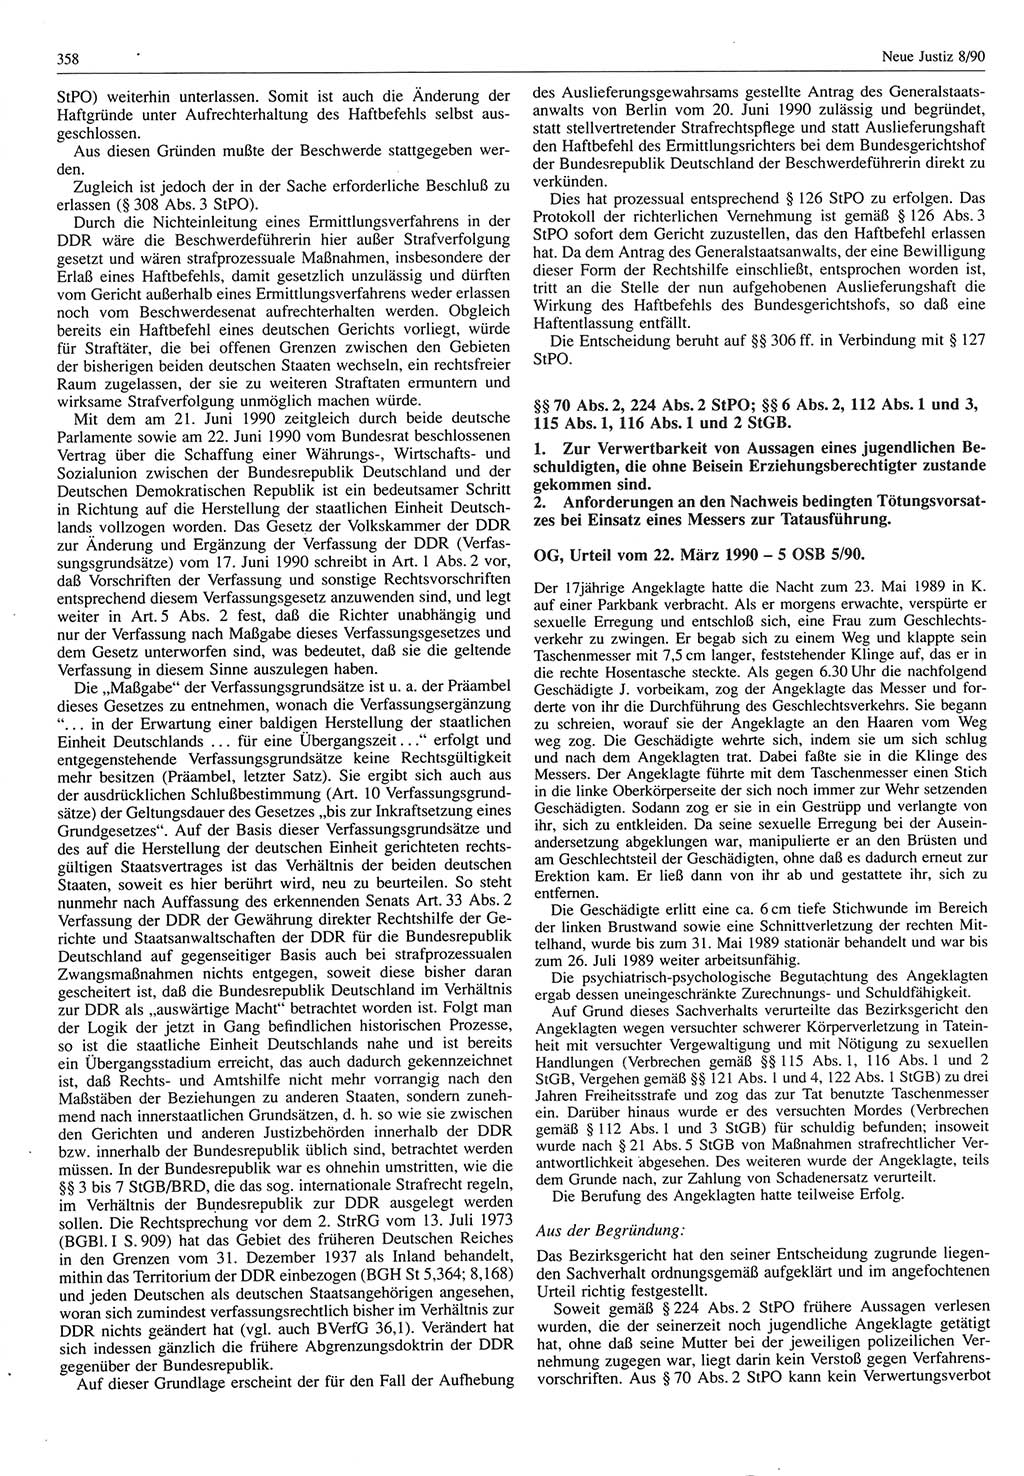 Neue Justiz (NJ), Zeitschrift für Rechtsetzung und Rechtsanwendung [Deutsche Demokratische Republik (DDR)], 44. Jahrgang 1990, Seite 358 (NJ DDR 1990, S. 358)